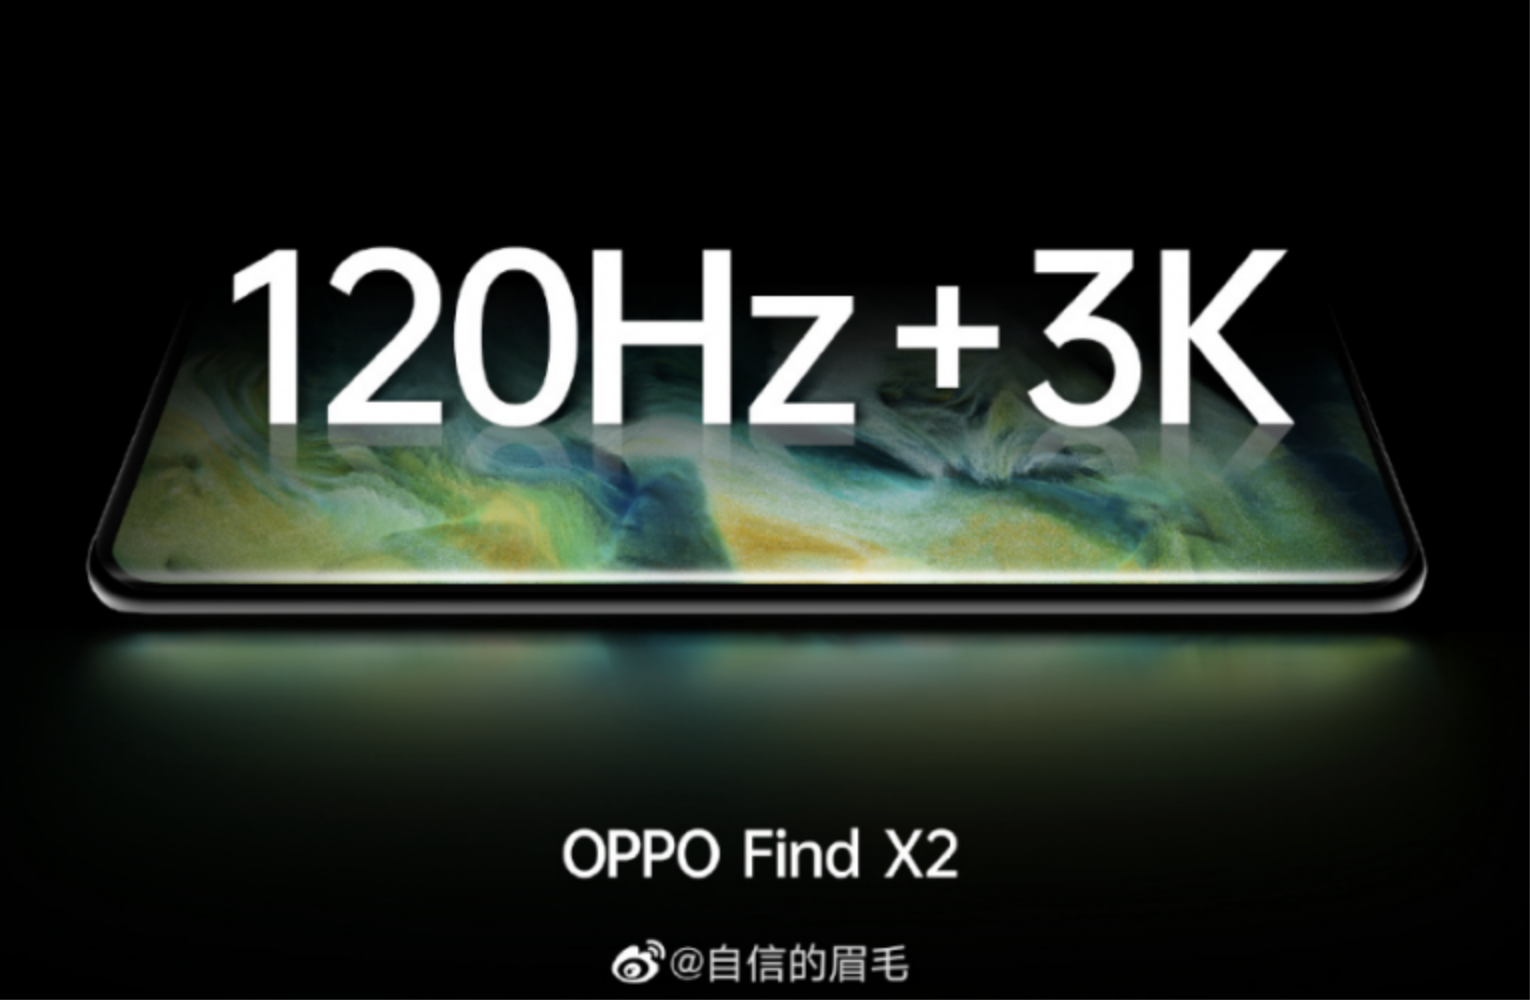 Oppo Find X2: w smartfonie znajdzie się panel OLED 3K z odświeżaniem 120 Hz